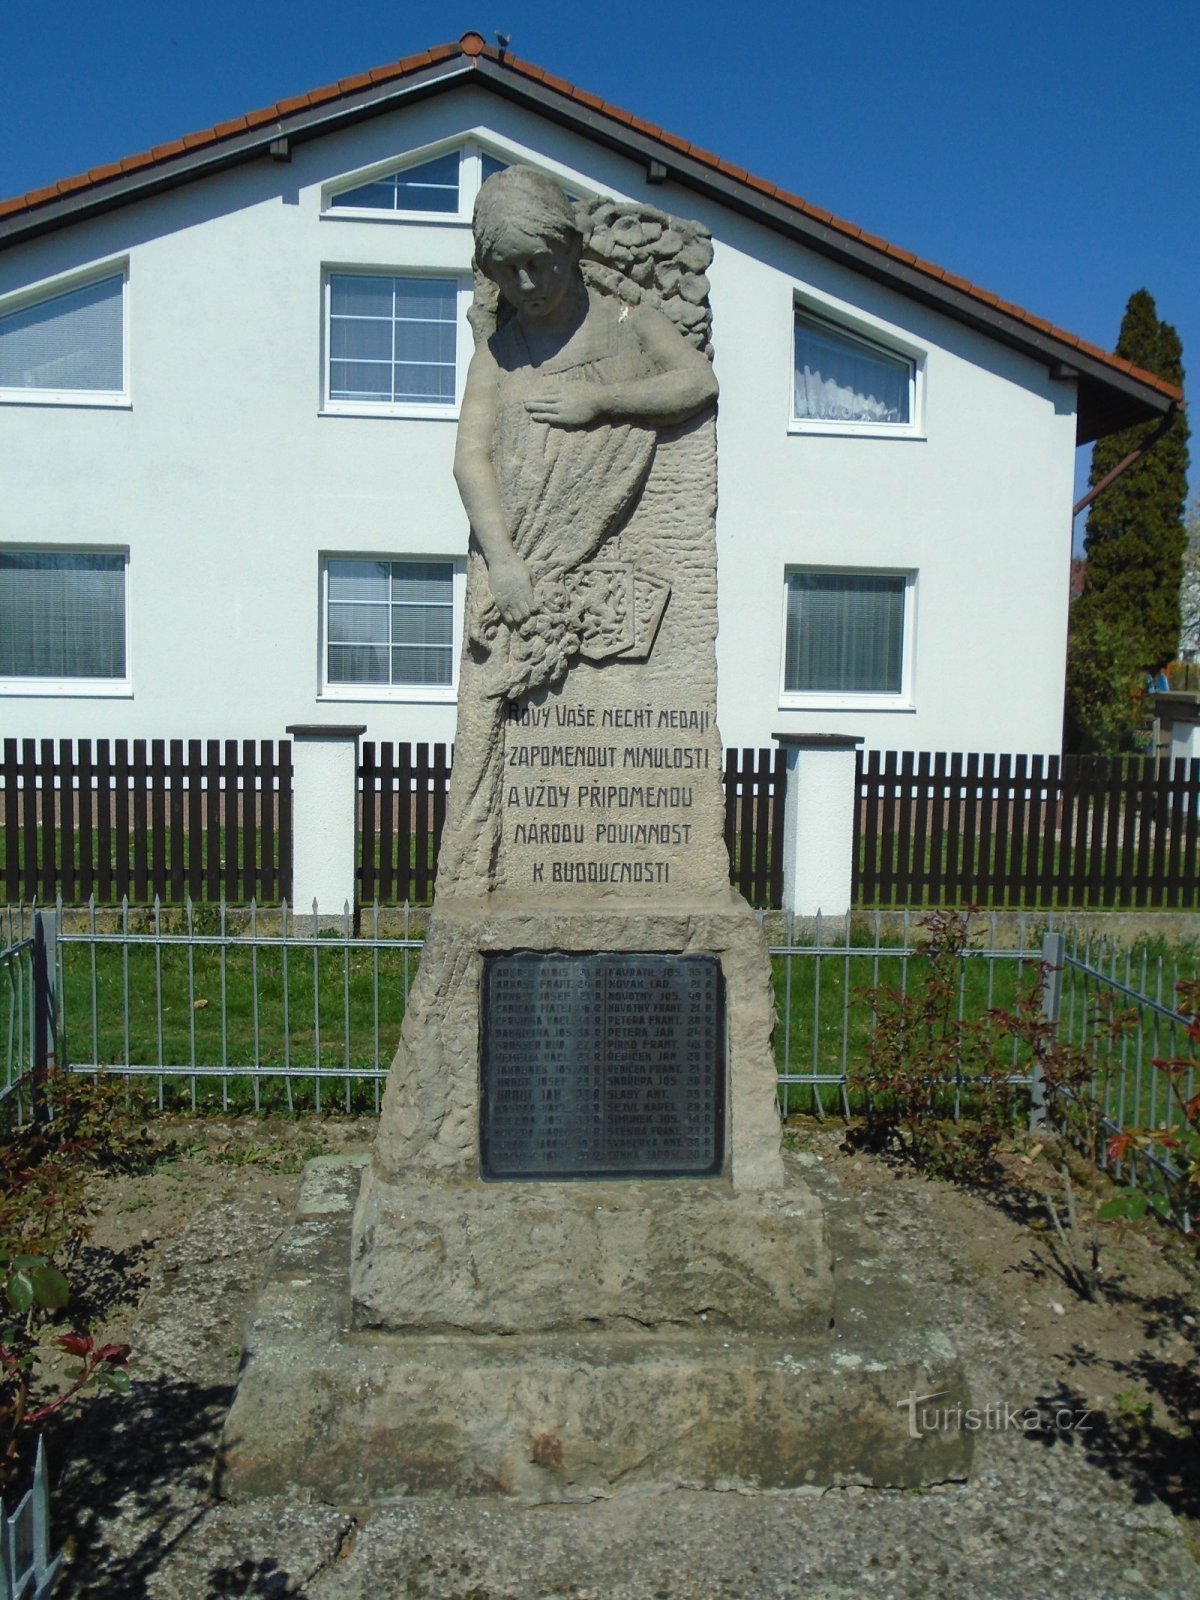 Đài tưởng niệm những người đã ngã xuống (Vysoká nad Labem)